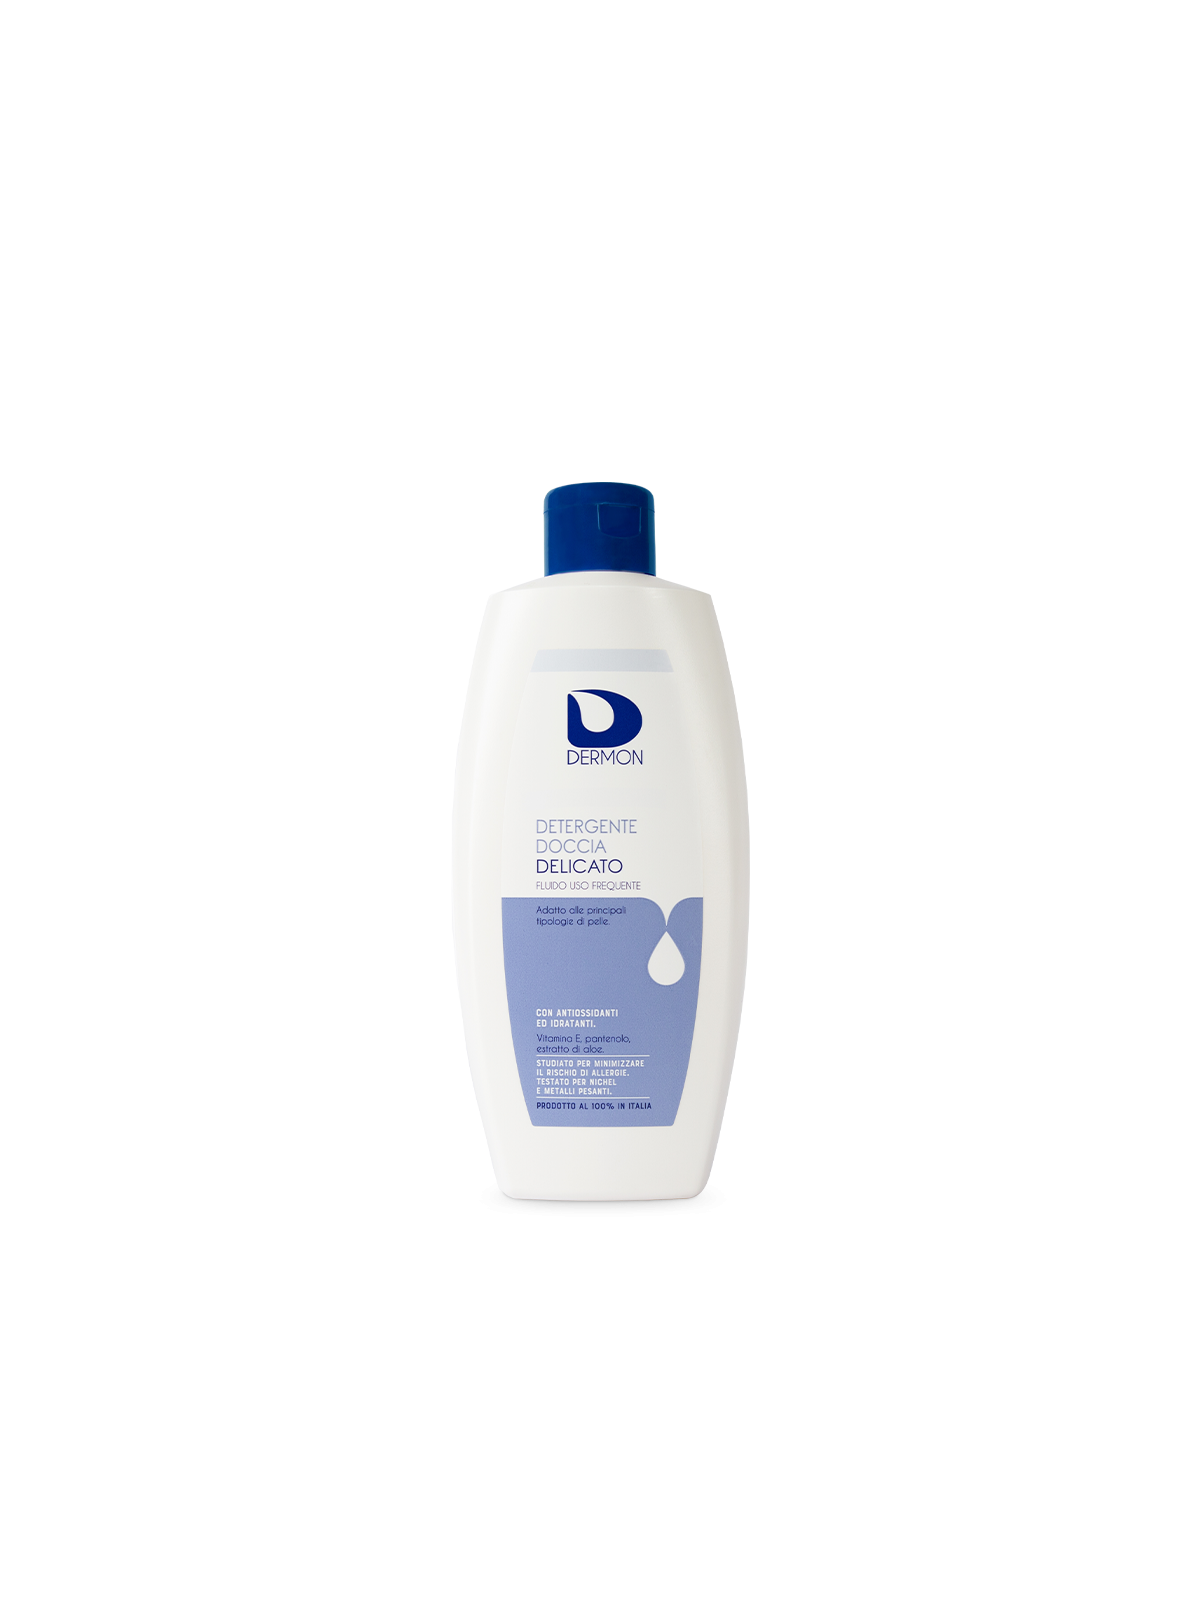 Dermon Detergente Doccia Delicato 400 ml